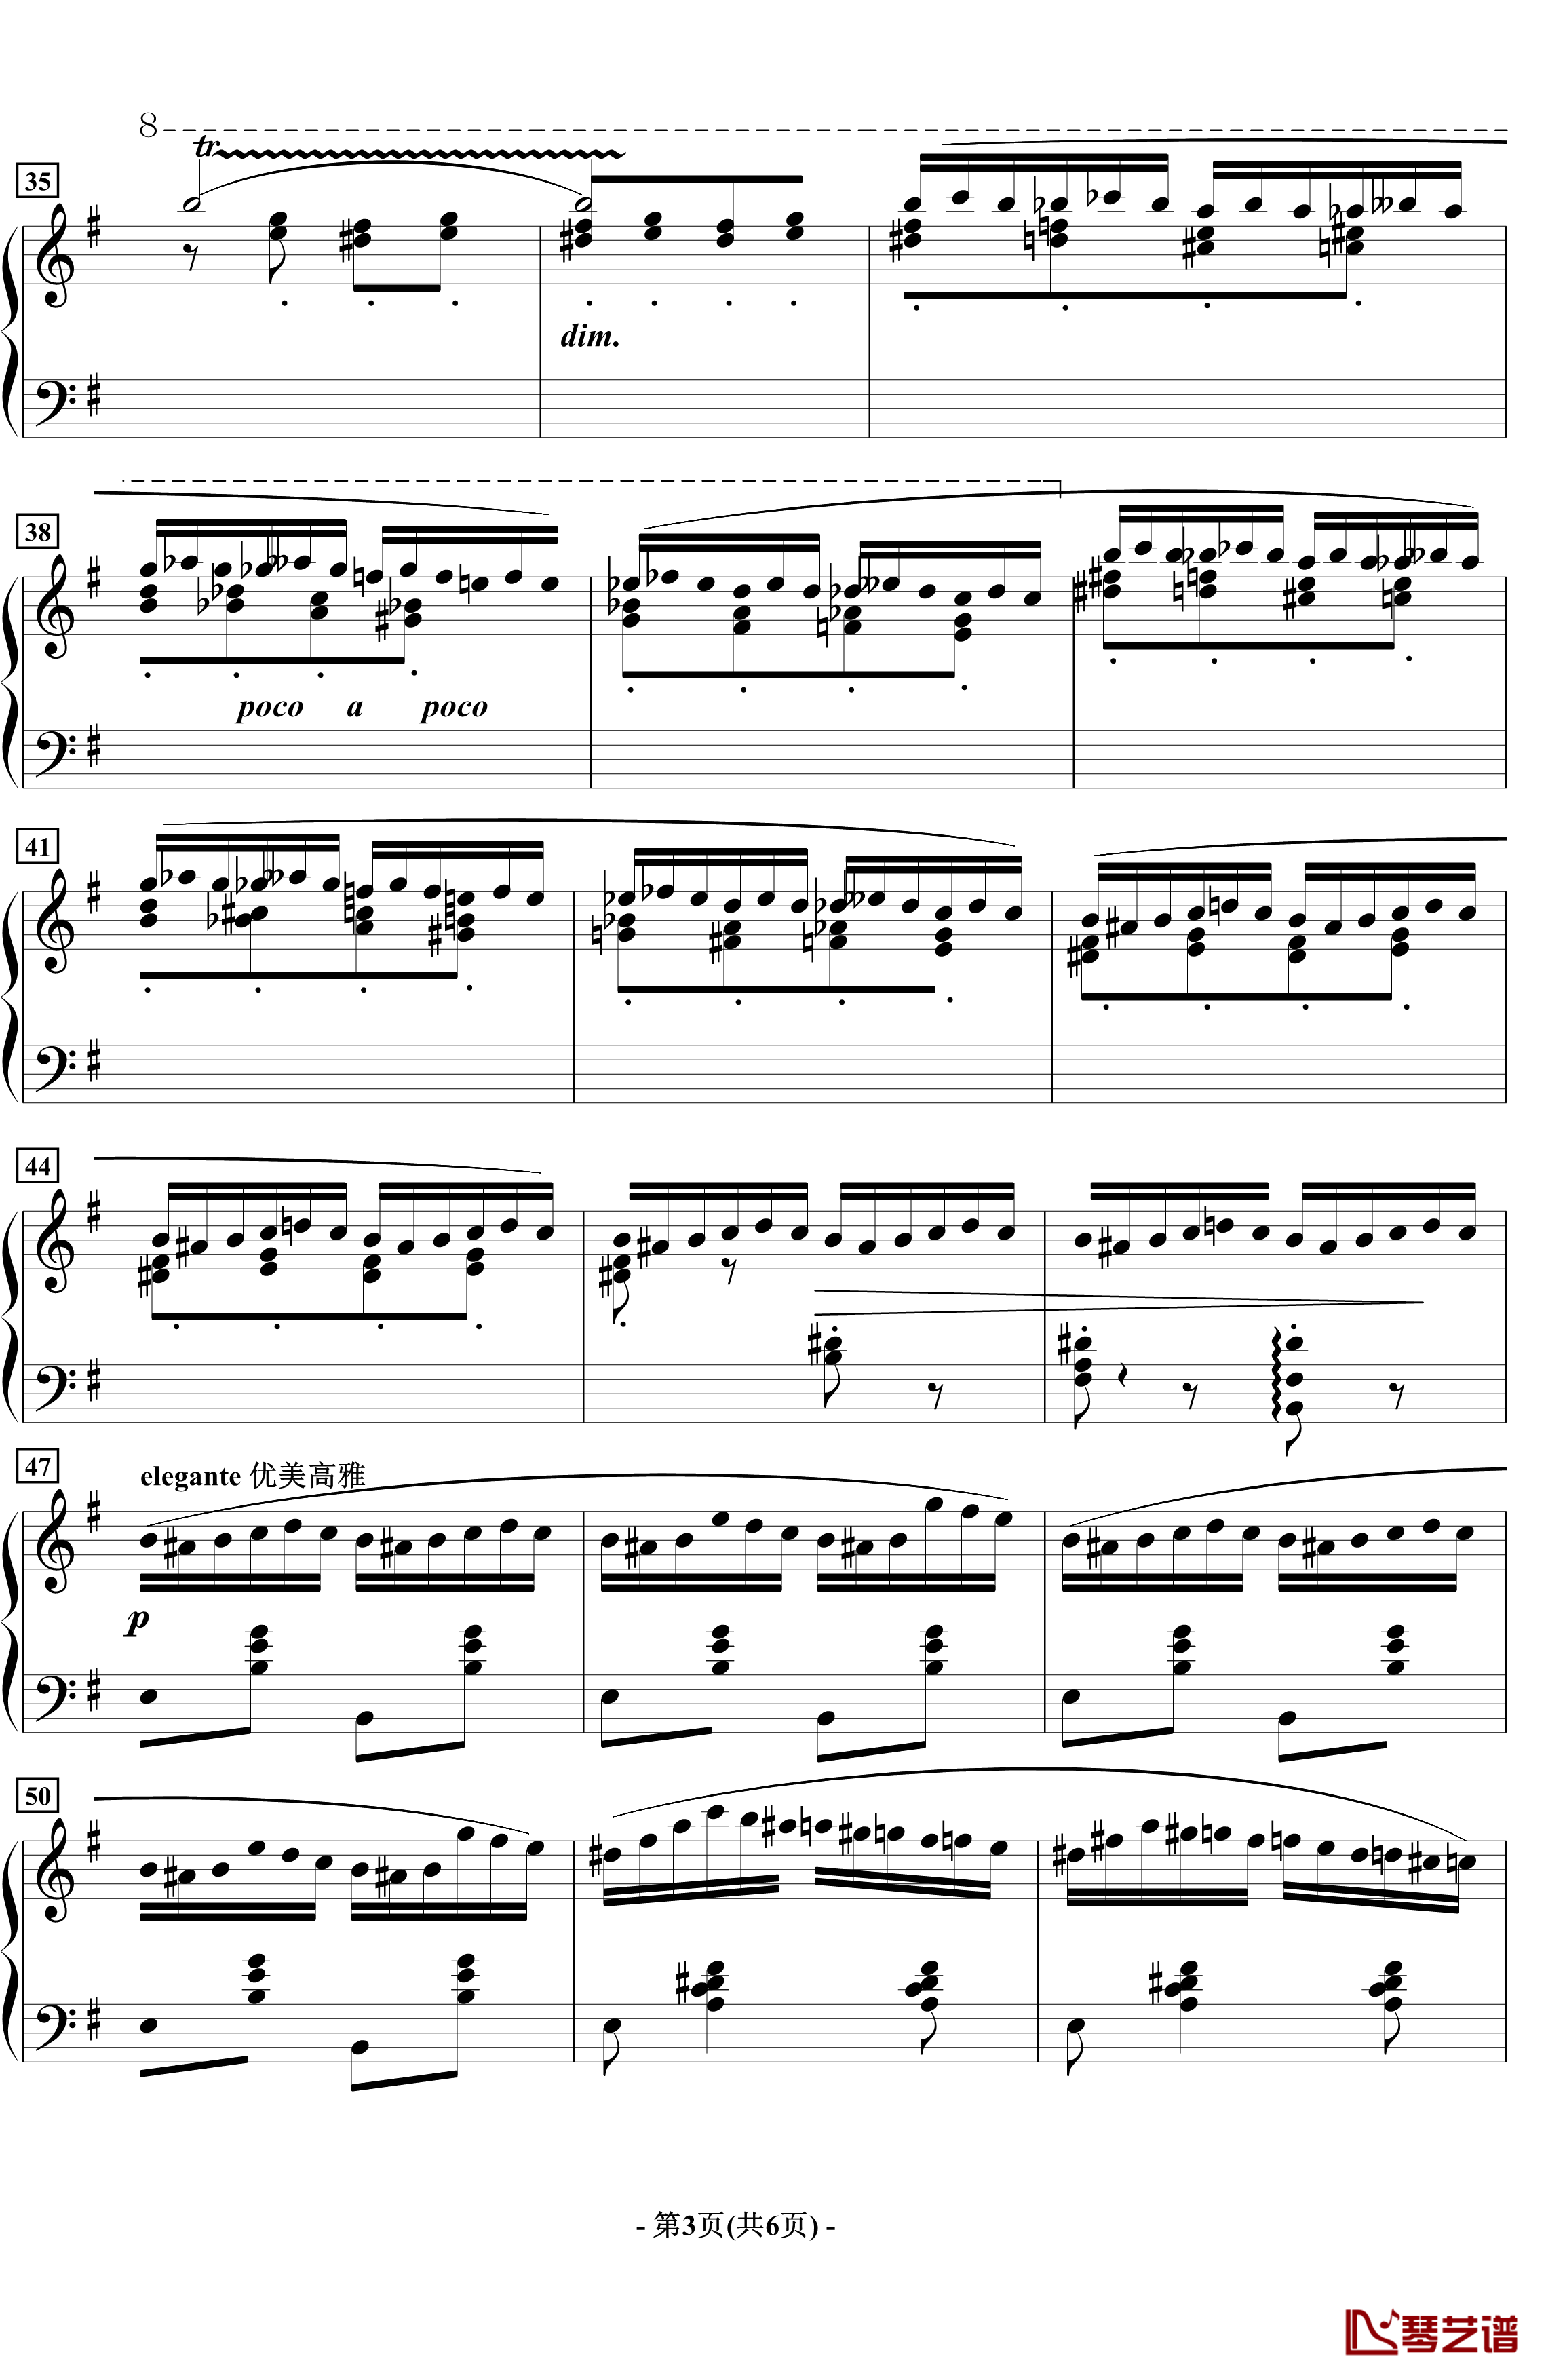 蝴蝶钢琴谱-音乐会练习曲-拉瓦列3